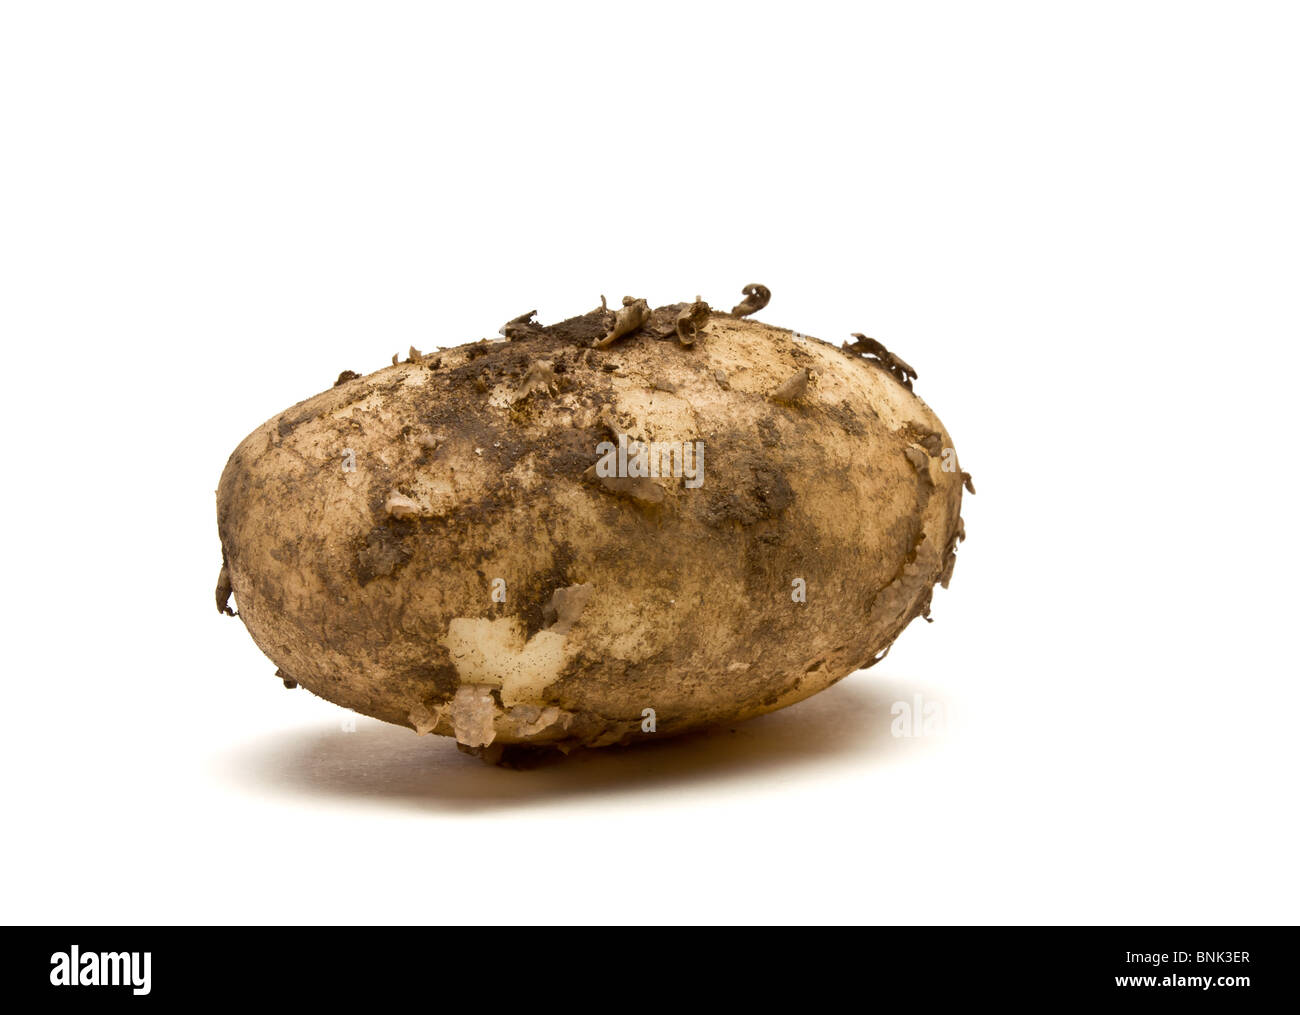 Lincoln de pommes de terre nouvelles à partir de la perspective peu isolés contre fond blanc. Banque D'Images